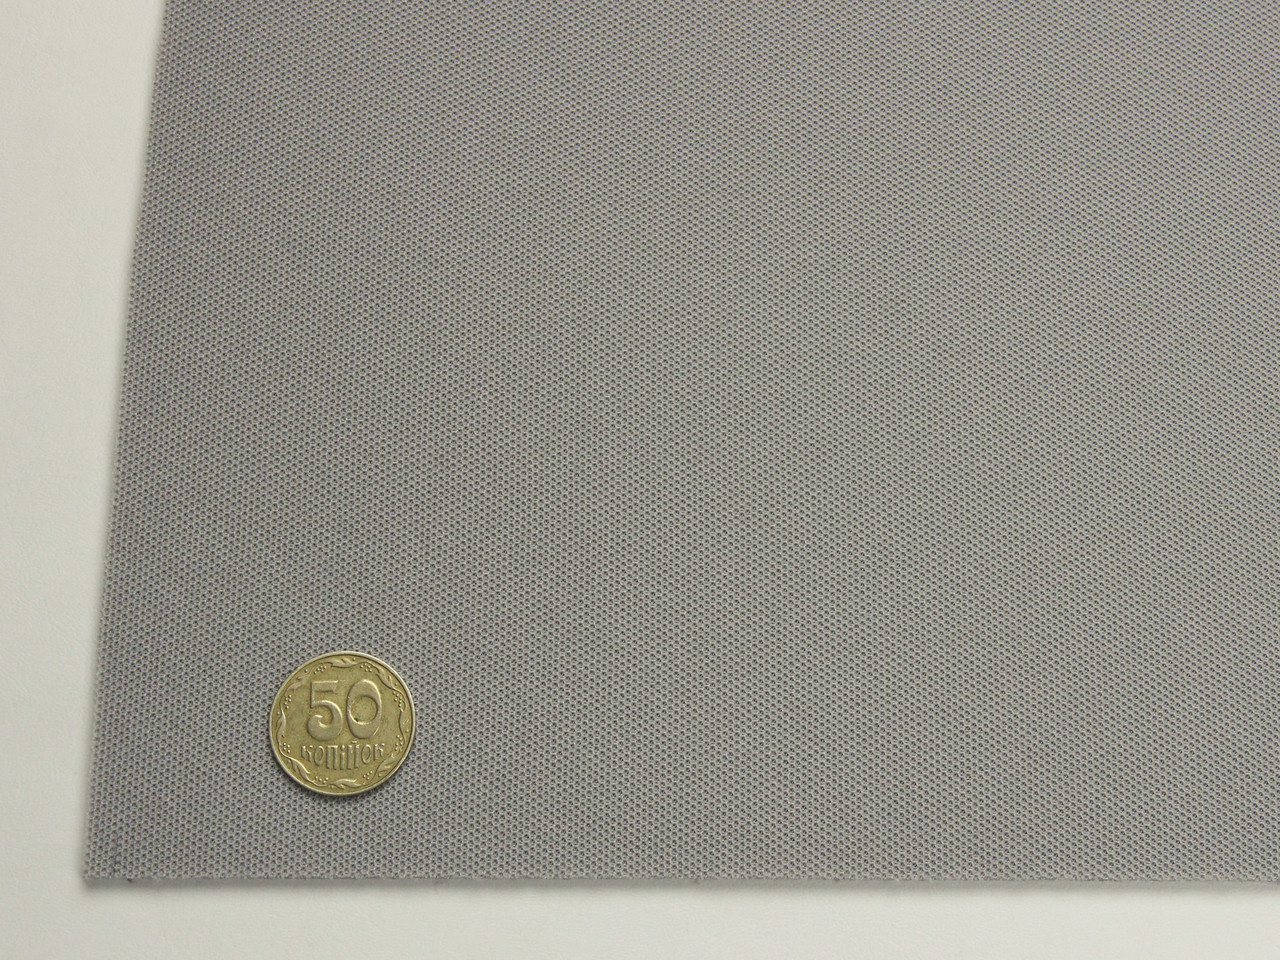 Автоткань потолочная D49, (цвет серый теплый) на поролоне, толщина 4мм, ширина 170см, Турция детальная фотка